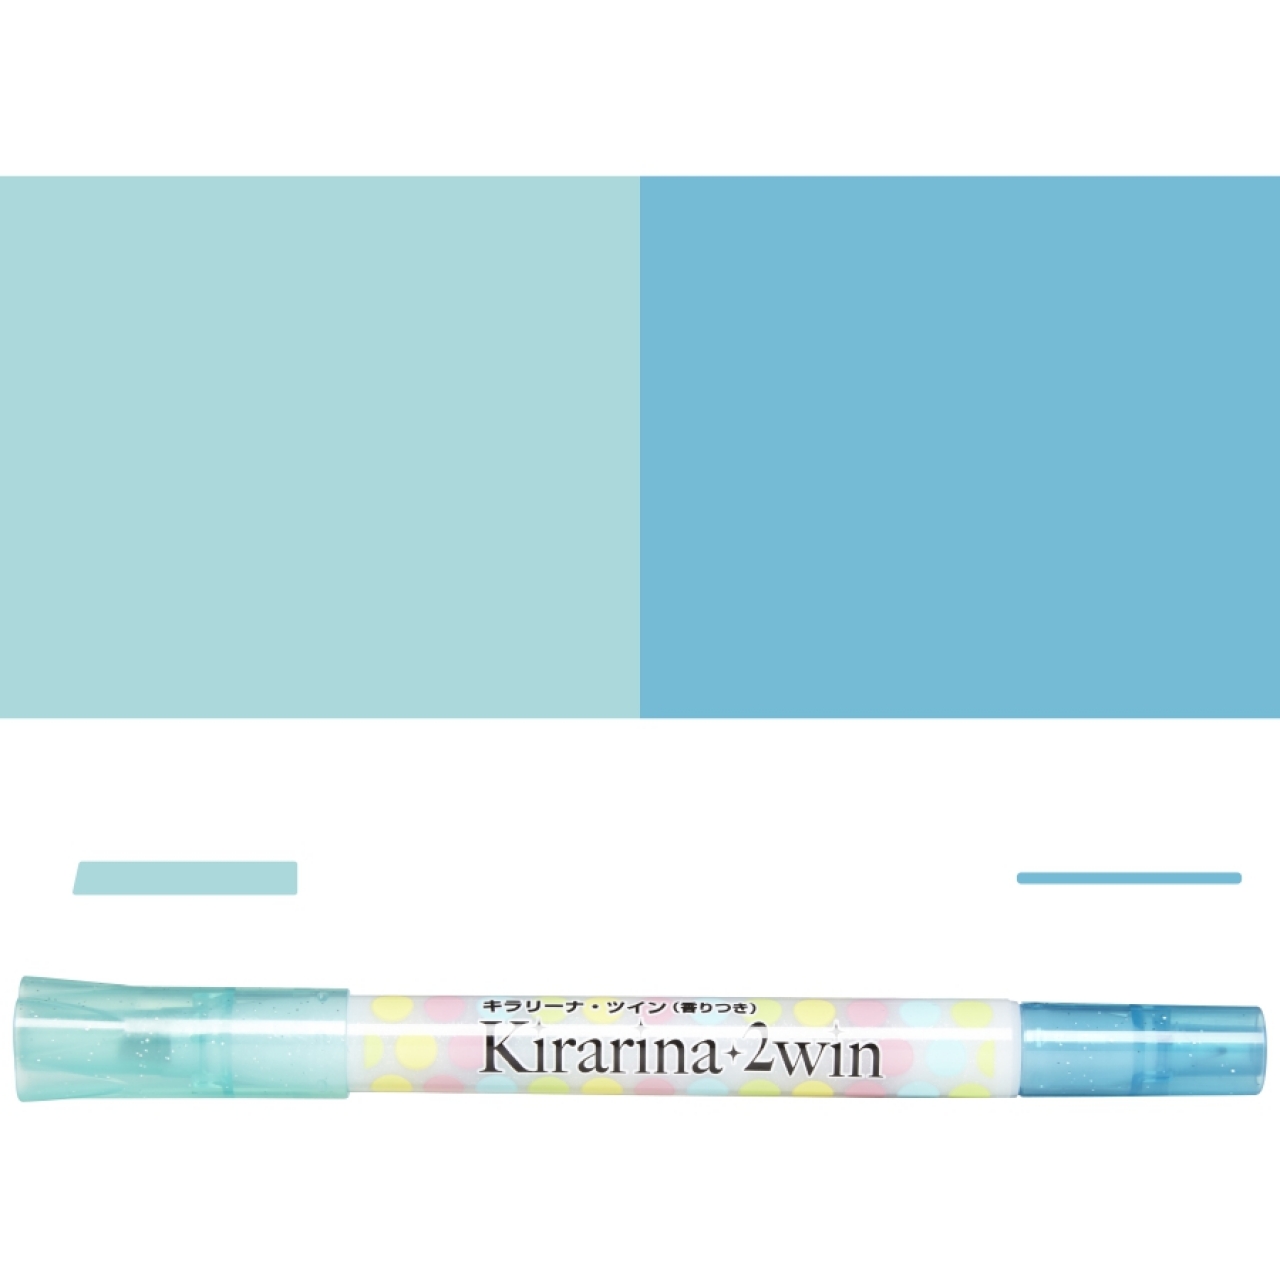 Kirarina 2win - Pale Blue